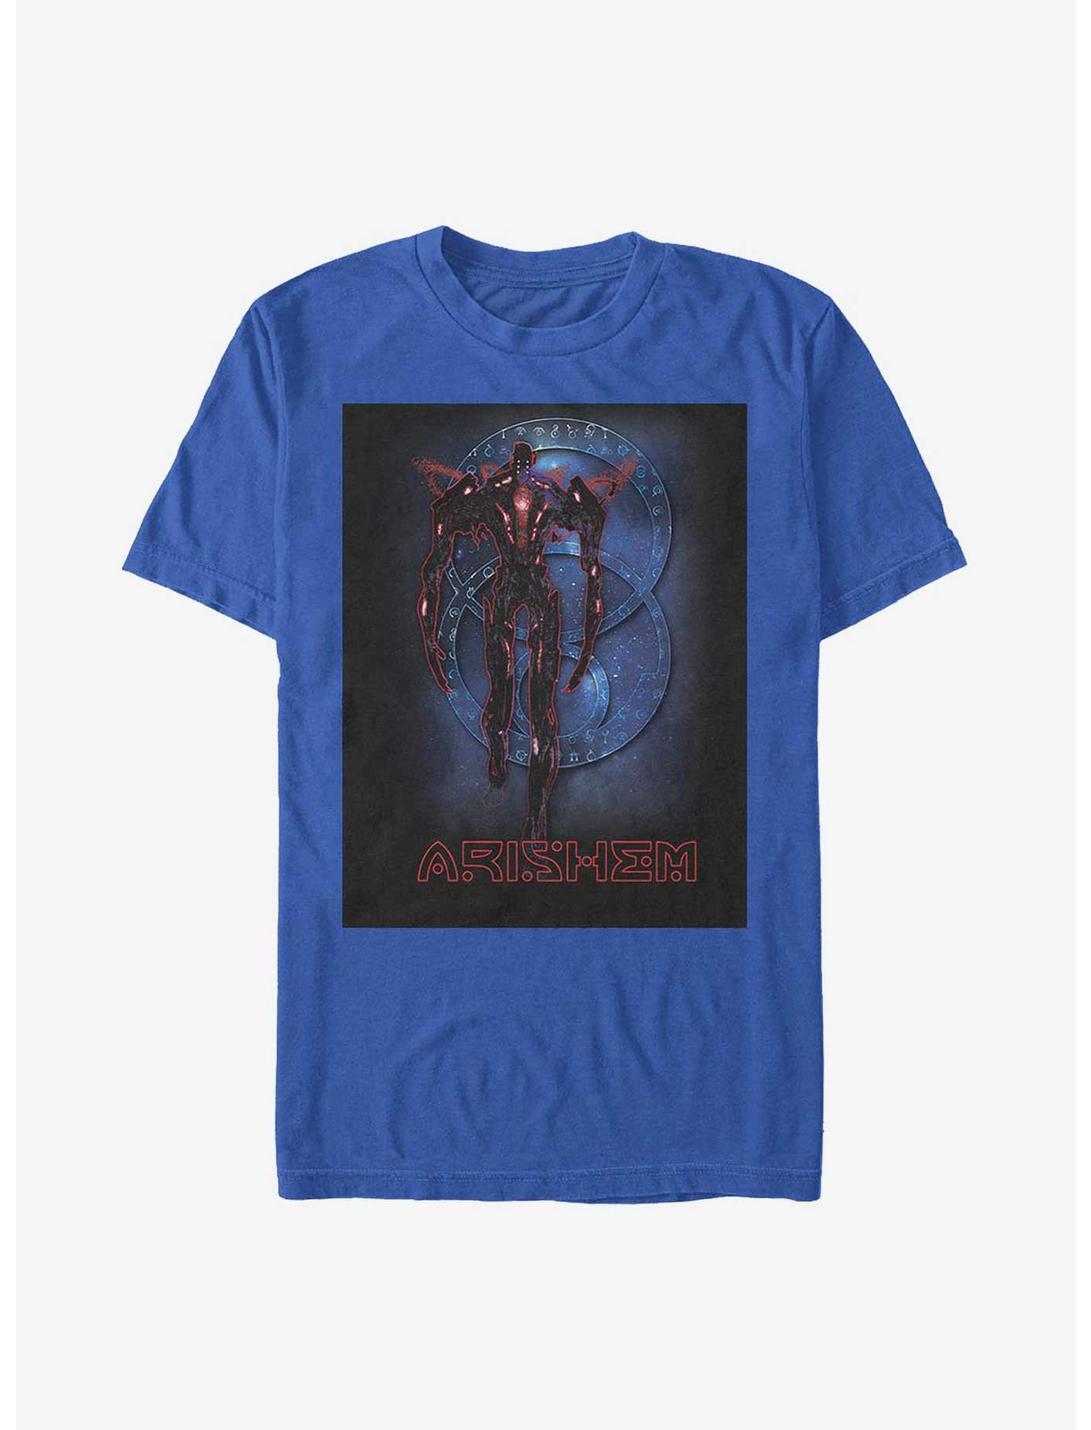 Marvel Eternals Arishem Galaxy T-Shirt, , hi-res